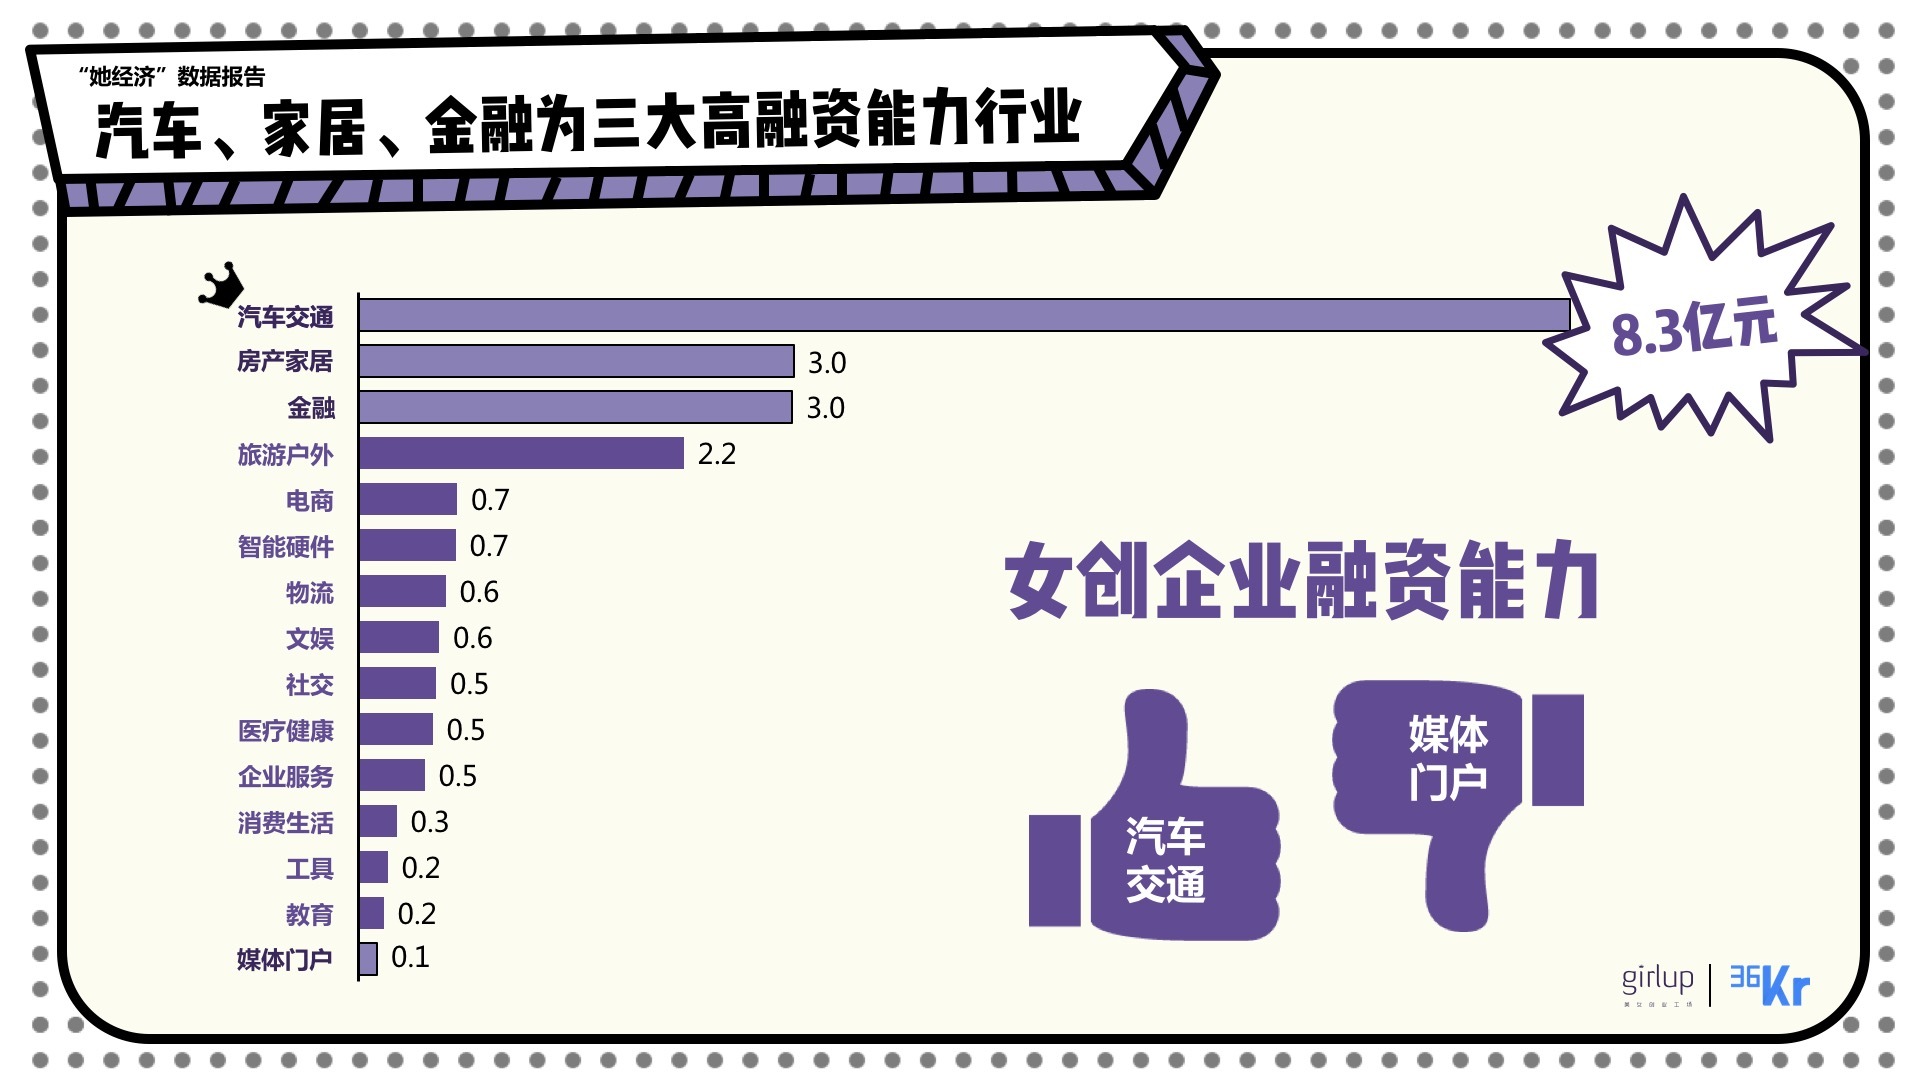 2015中国人才招聘趋势报告_女性创业网_中国酒店业现状及未来发展趋势